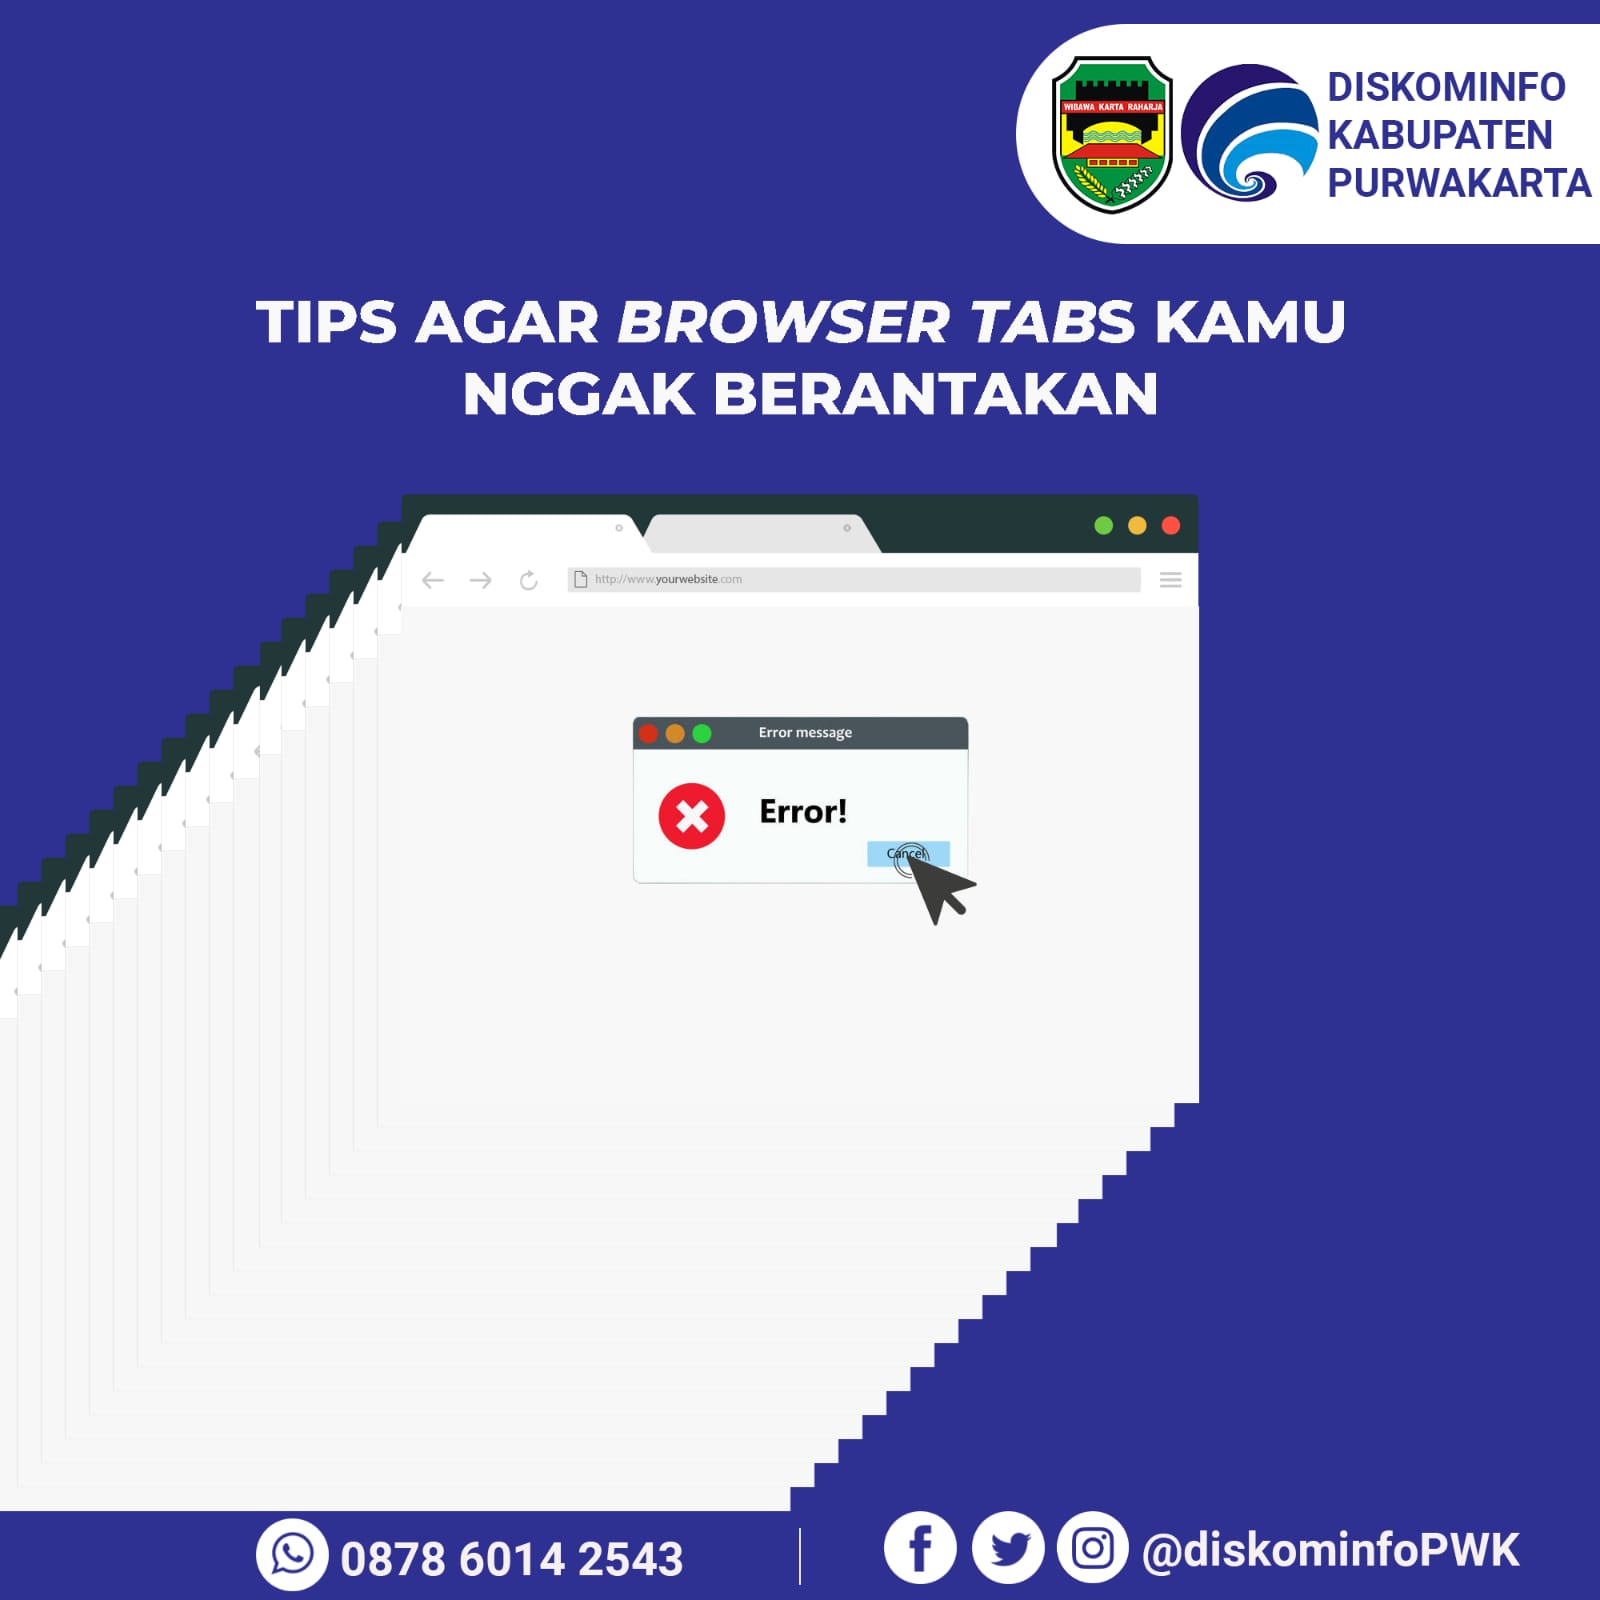 Tips Agar Browser Tabs Kamu Nggak Berantakan